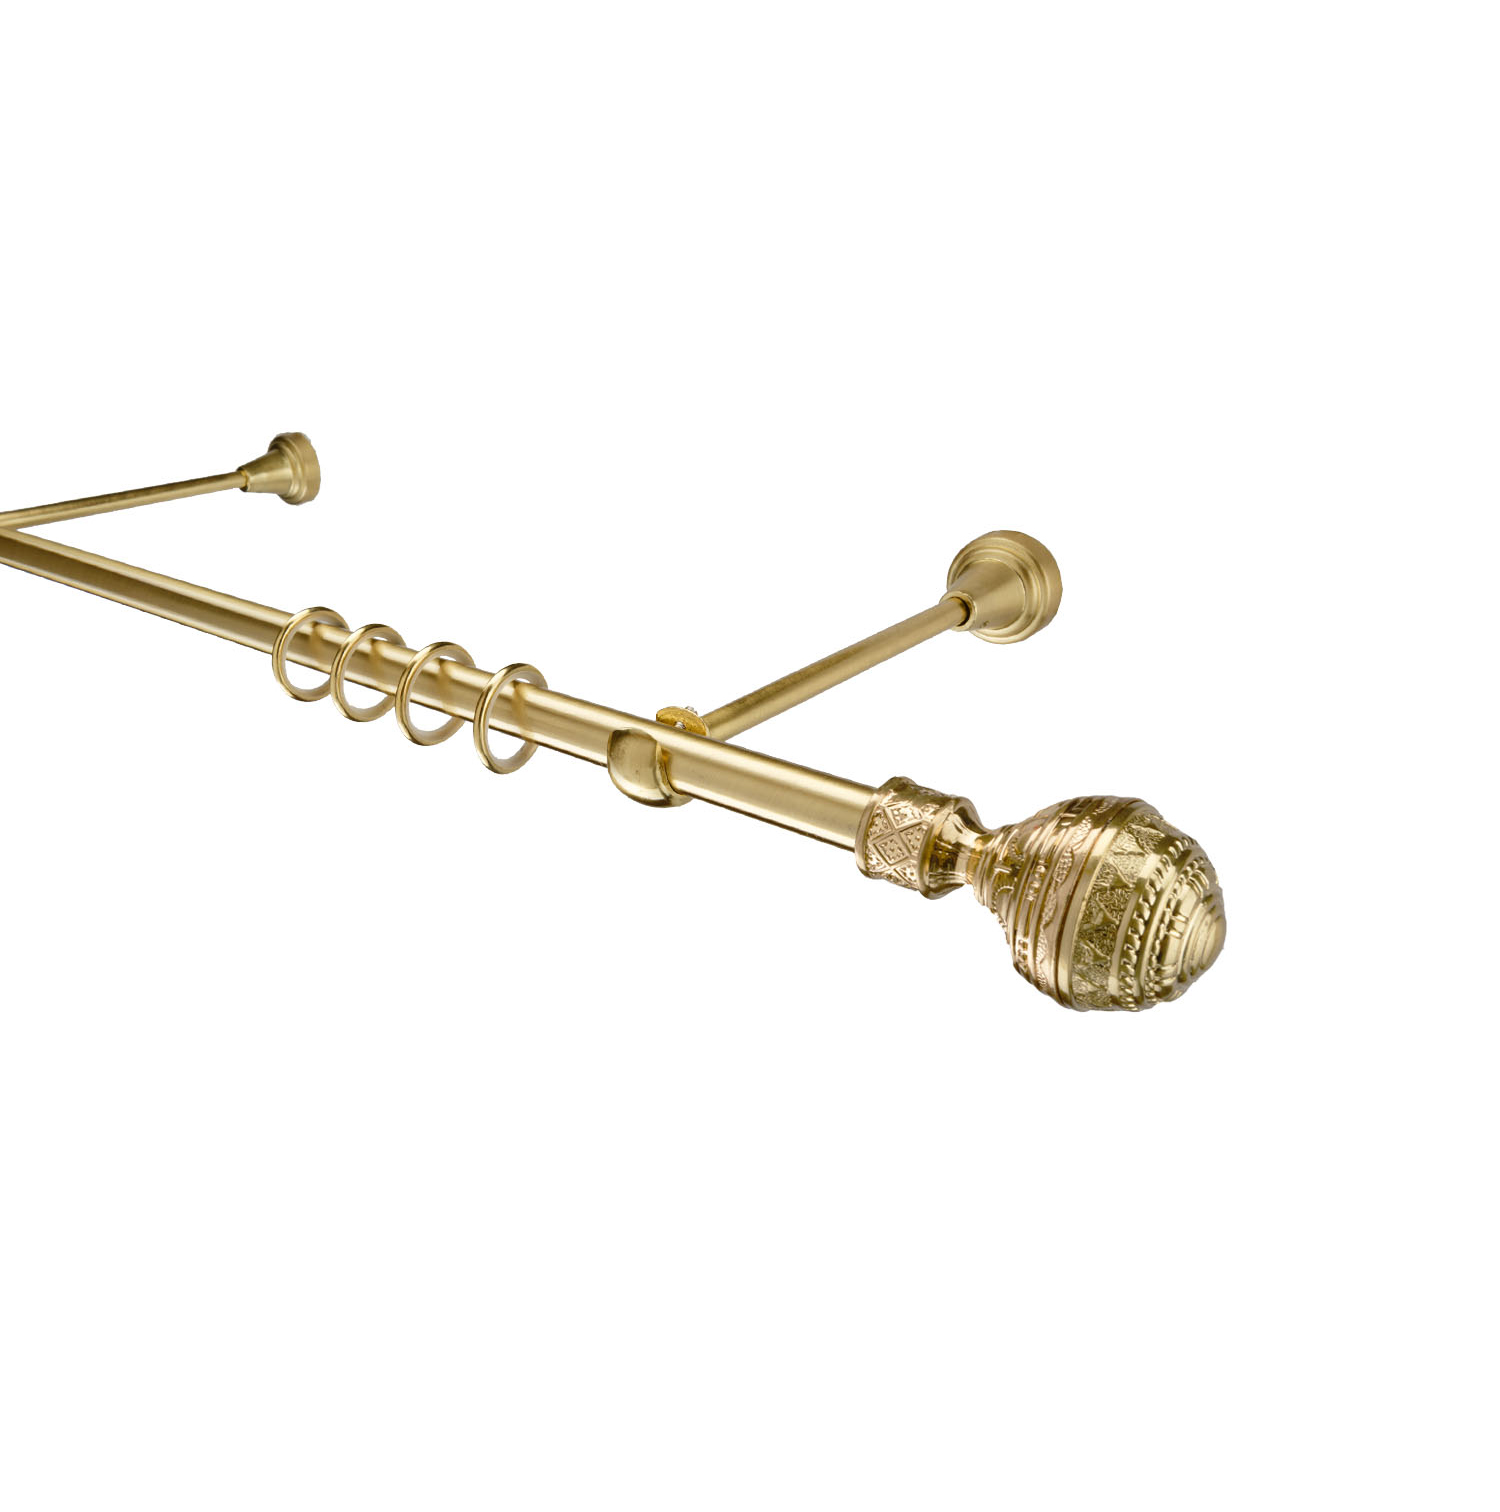 Металлический карниз для штор Роял, однорядный 16 мм, золото, гладкая штанга, длина 180 см - фото Wikidecor.ru